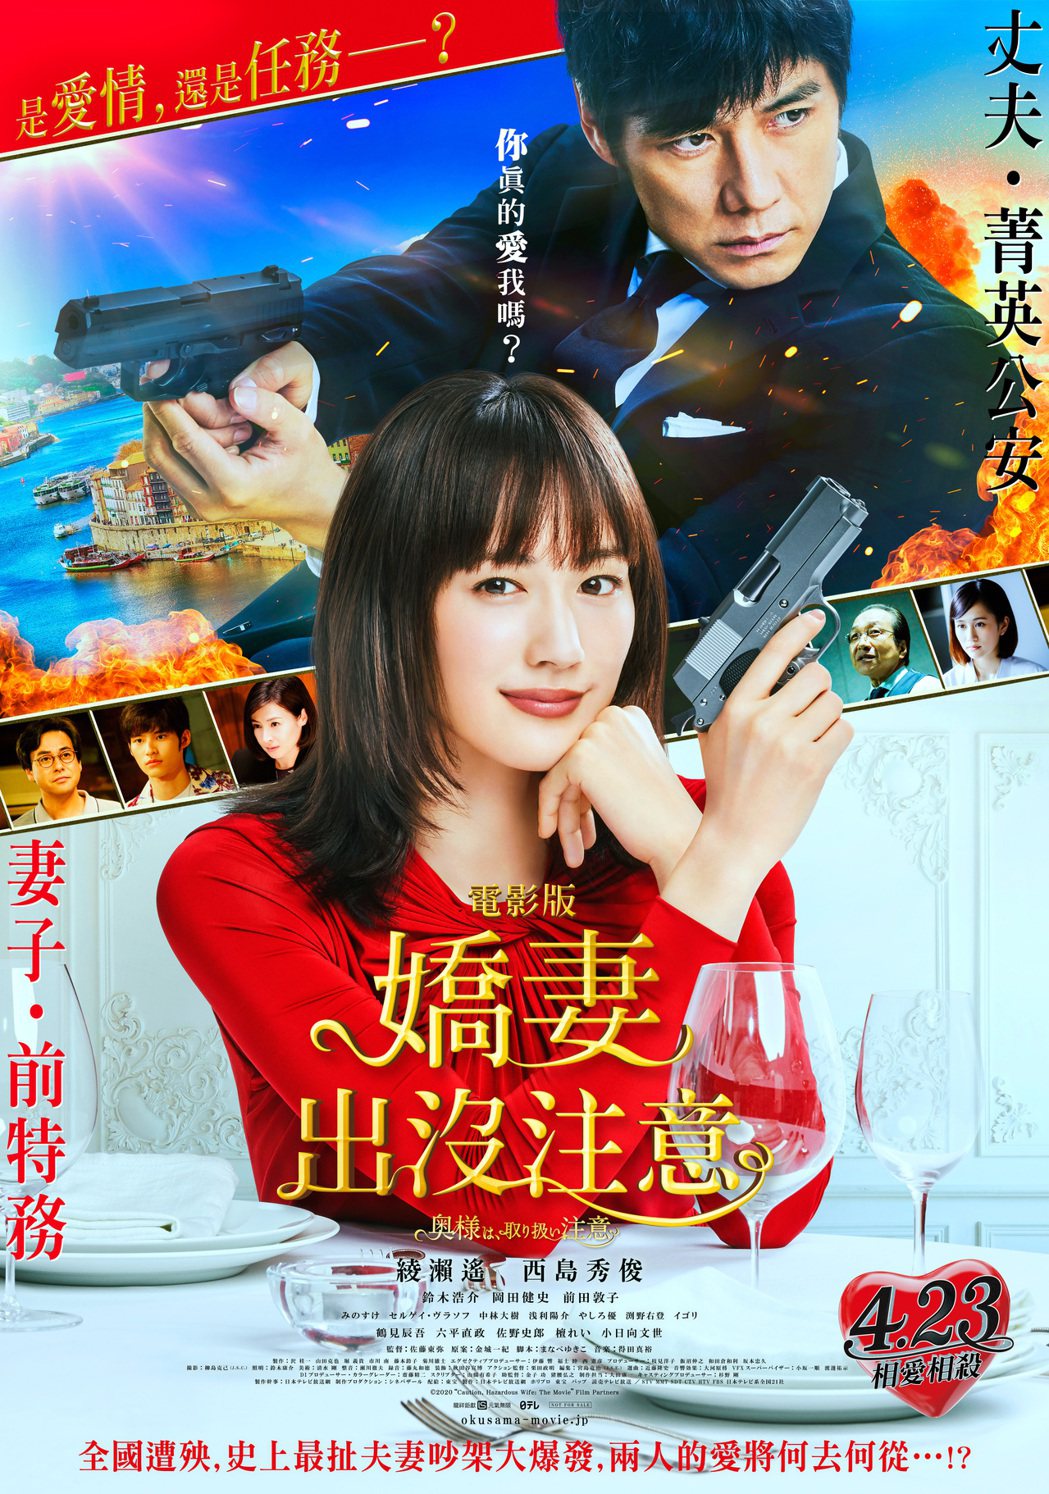 《電影版 嬌妻出沒注意》中文版海報。龍祥提供